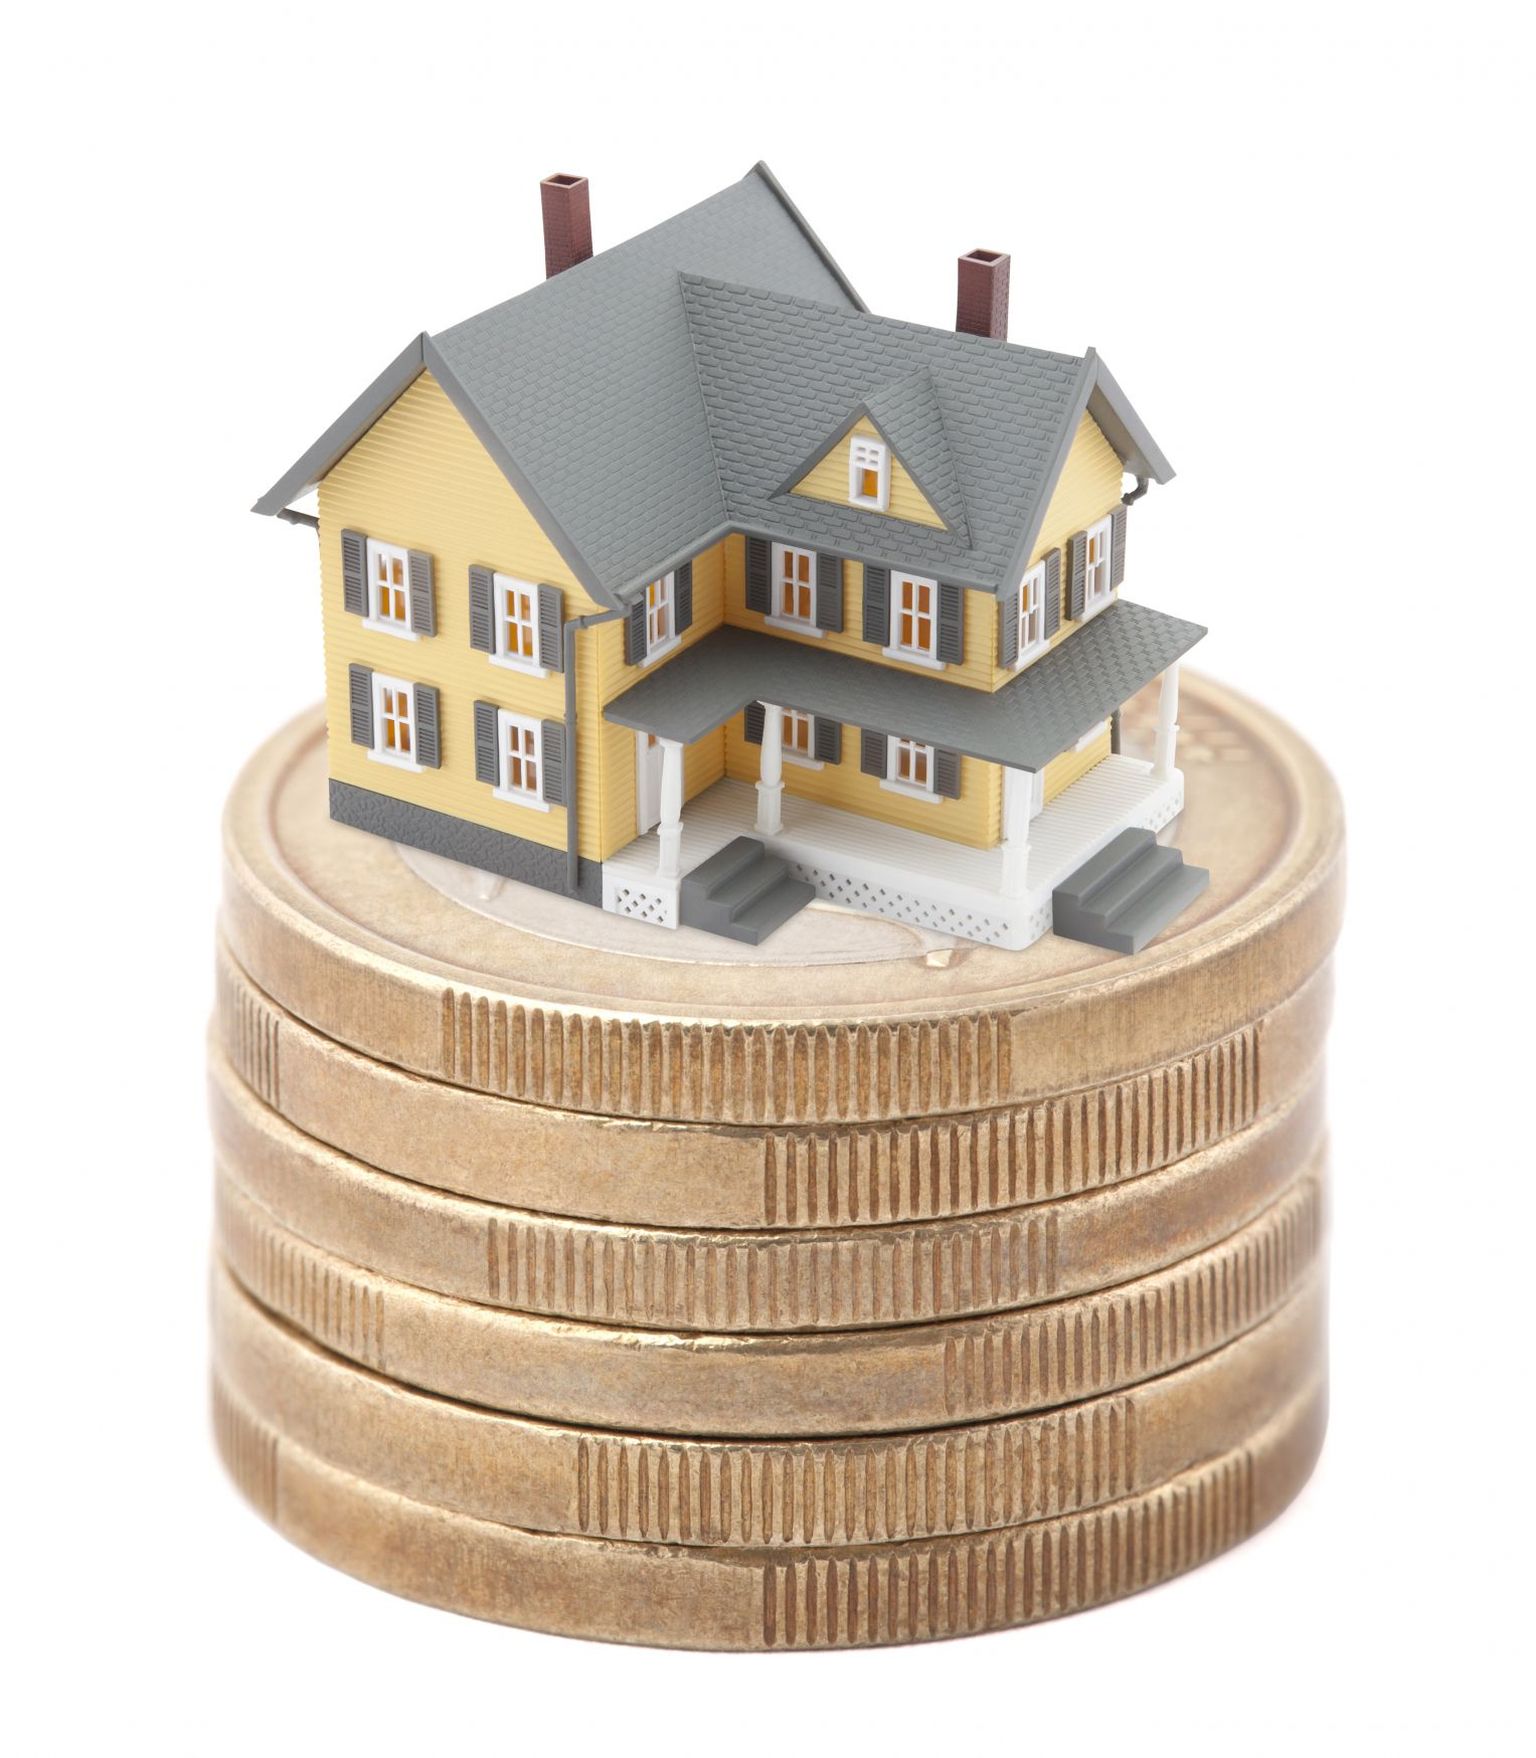 Kui kodu müüa ei soovita, kuid kulud on ühele inimesele siiski liiga suured, tasub mõelda näiteks üürilise leidmisele.